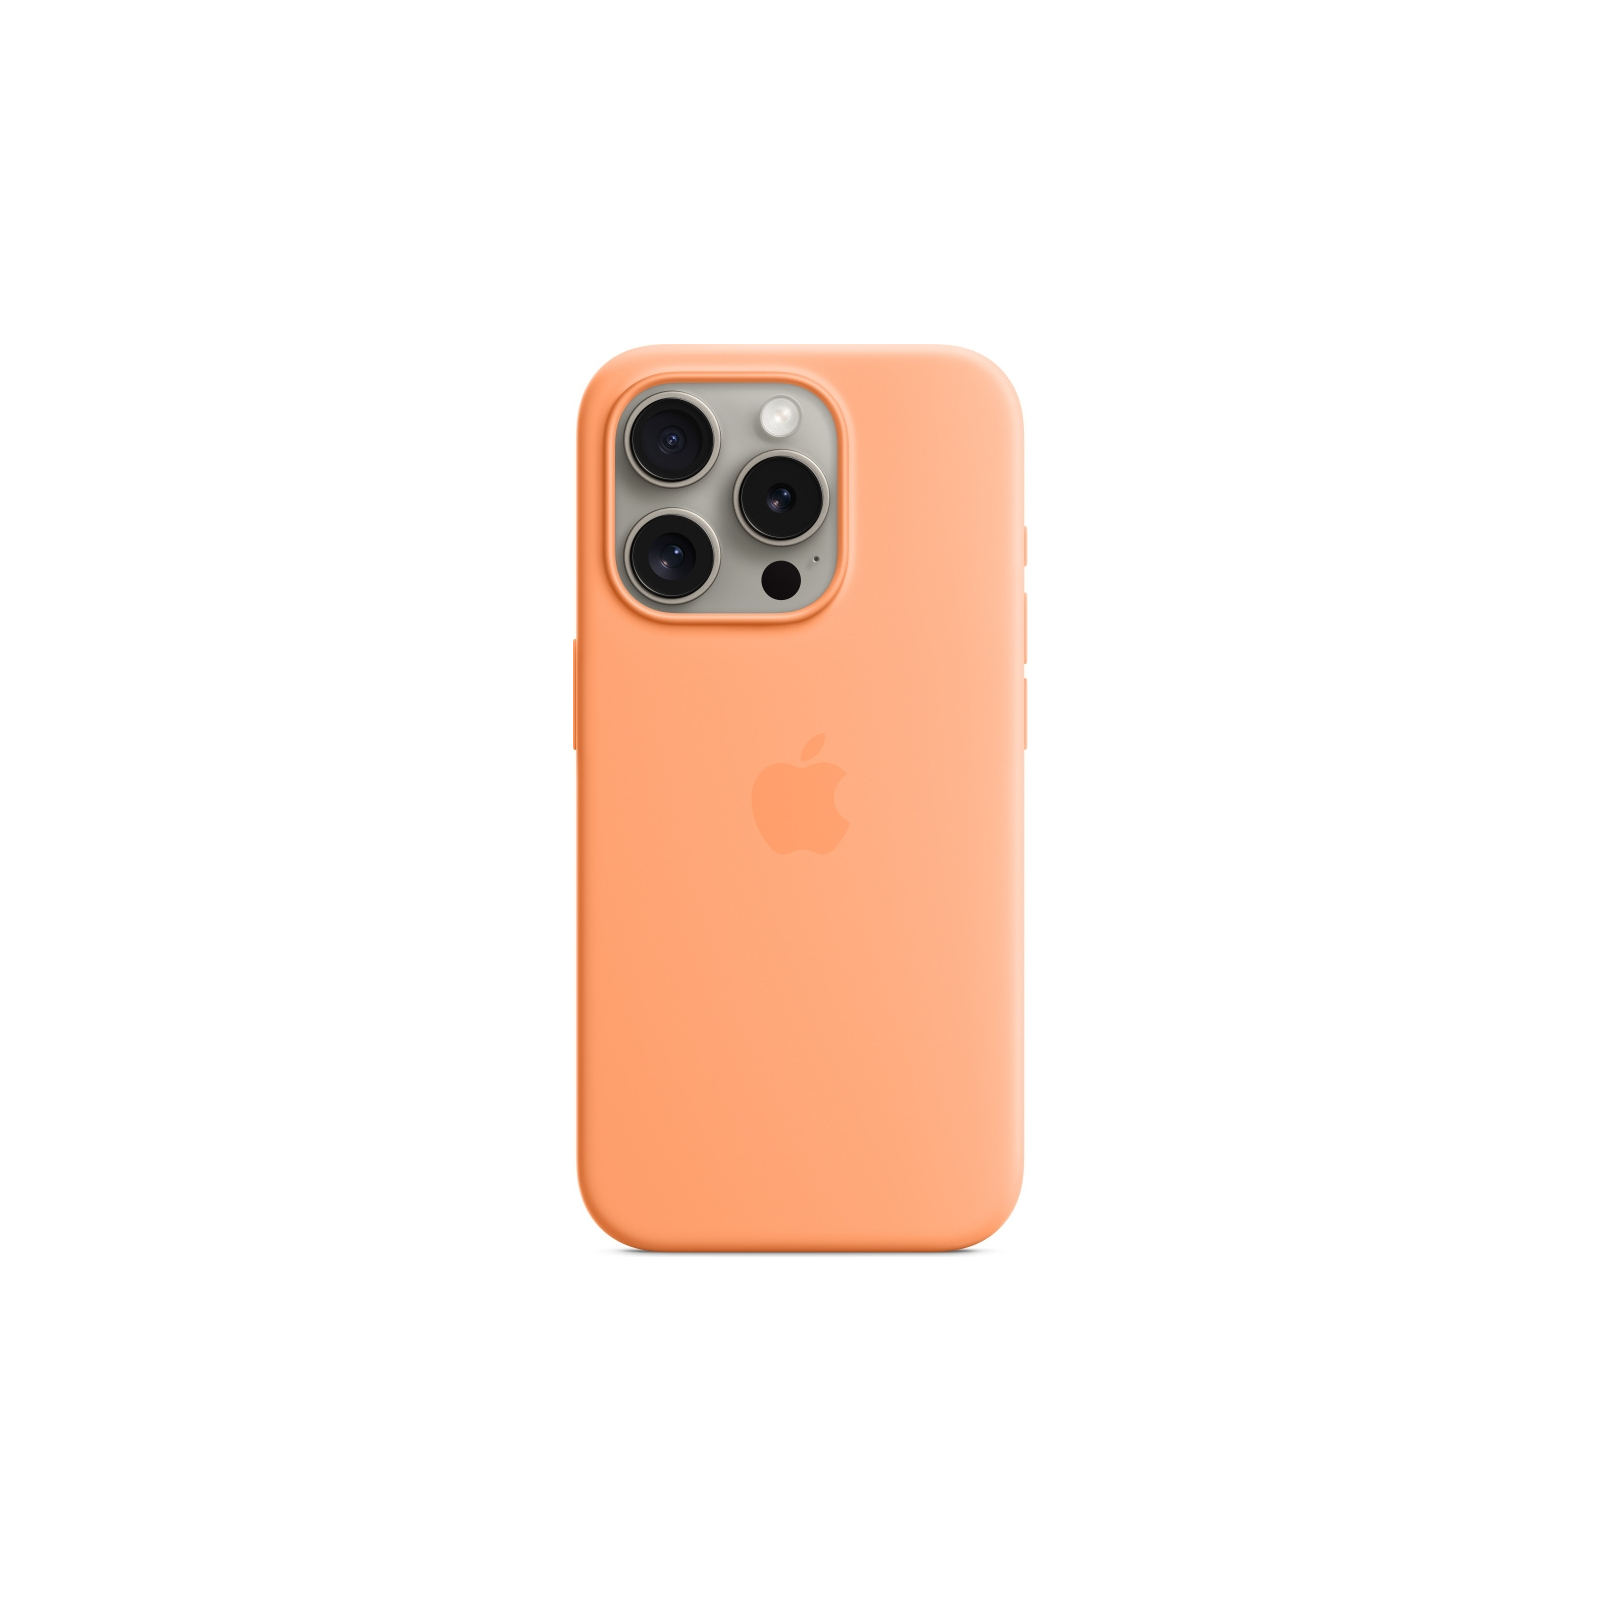 Чехол для мобильного телефона Apple iPhone 15 Pro Silicone Case with MagSafe Storm Blue (MT1D3ZM/A)